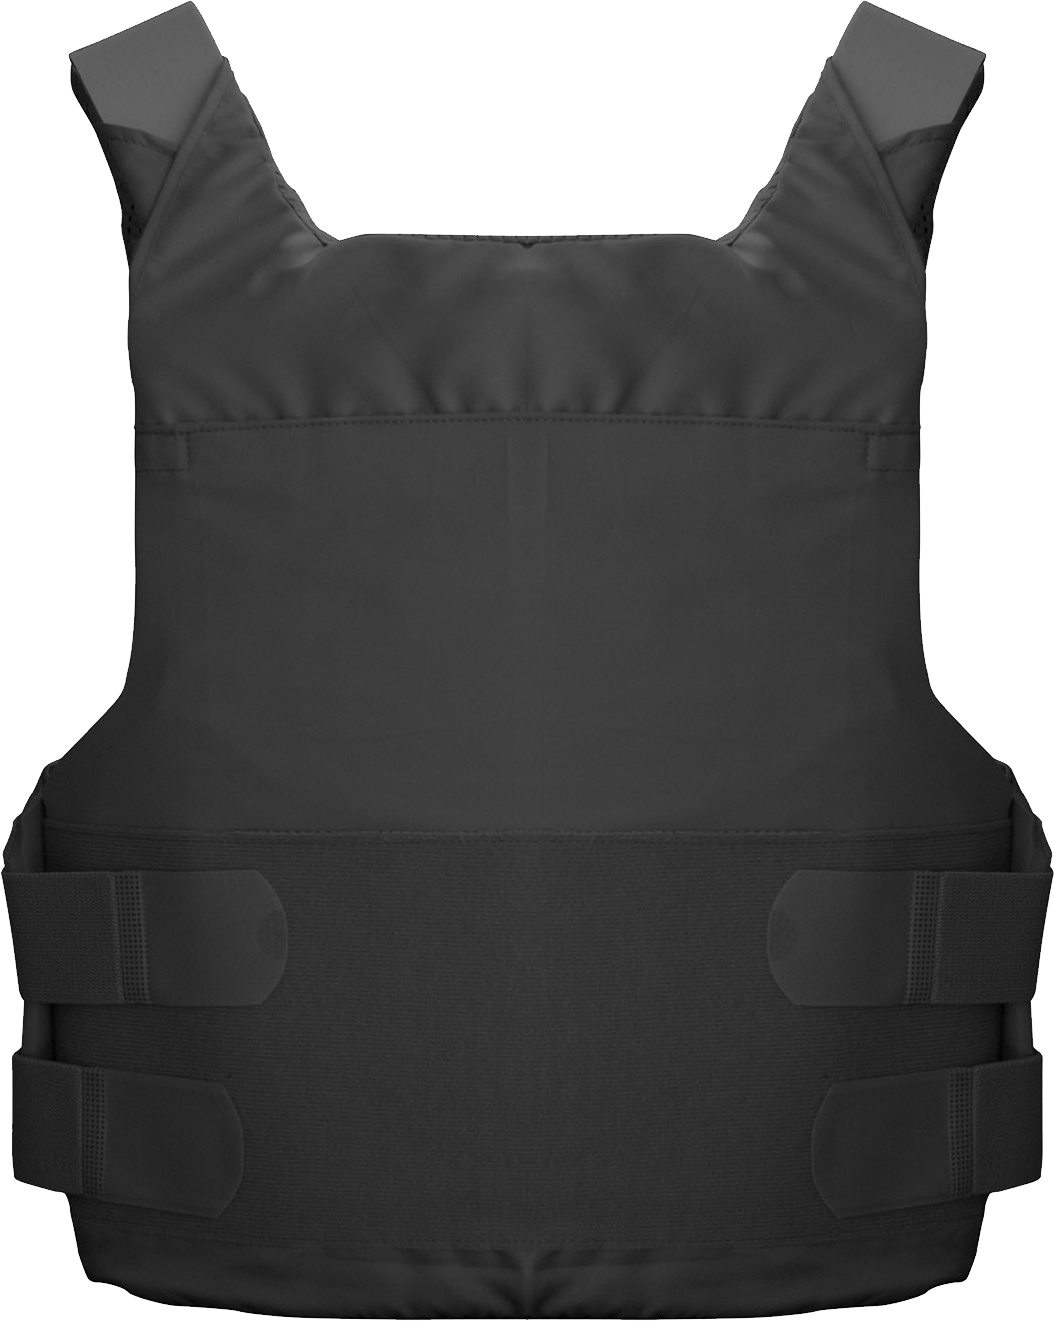 Black Military Bulletproof Vest PNG Image